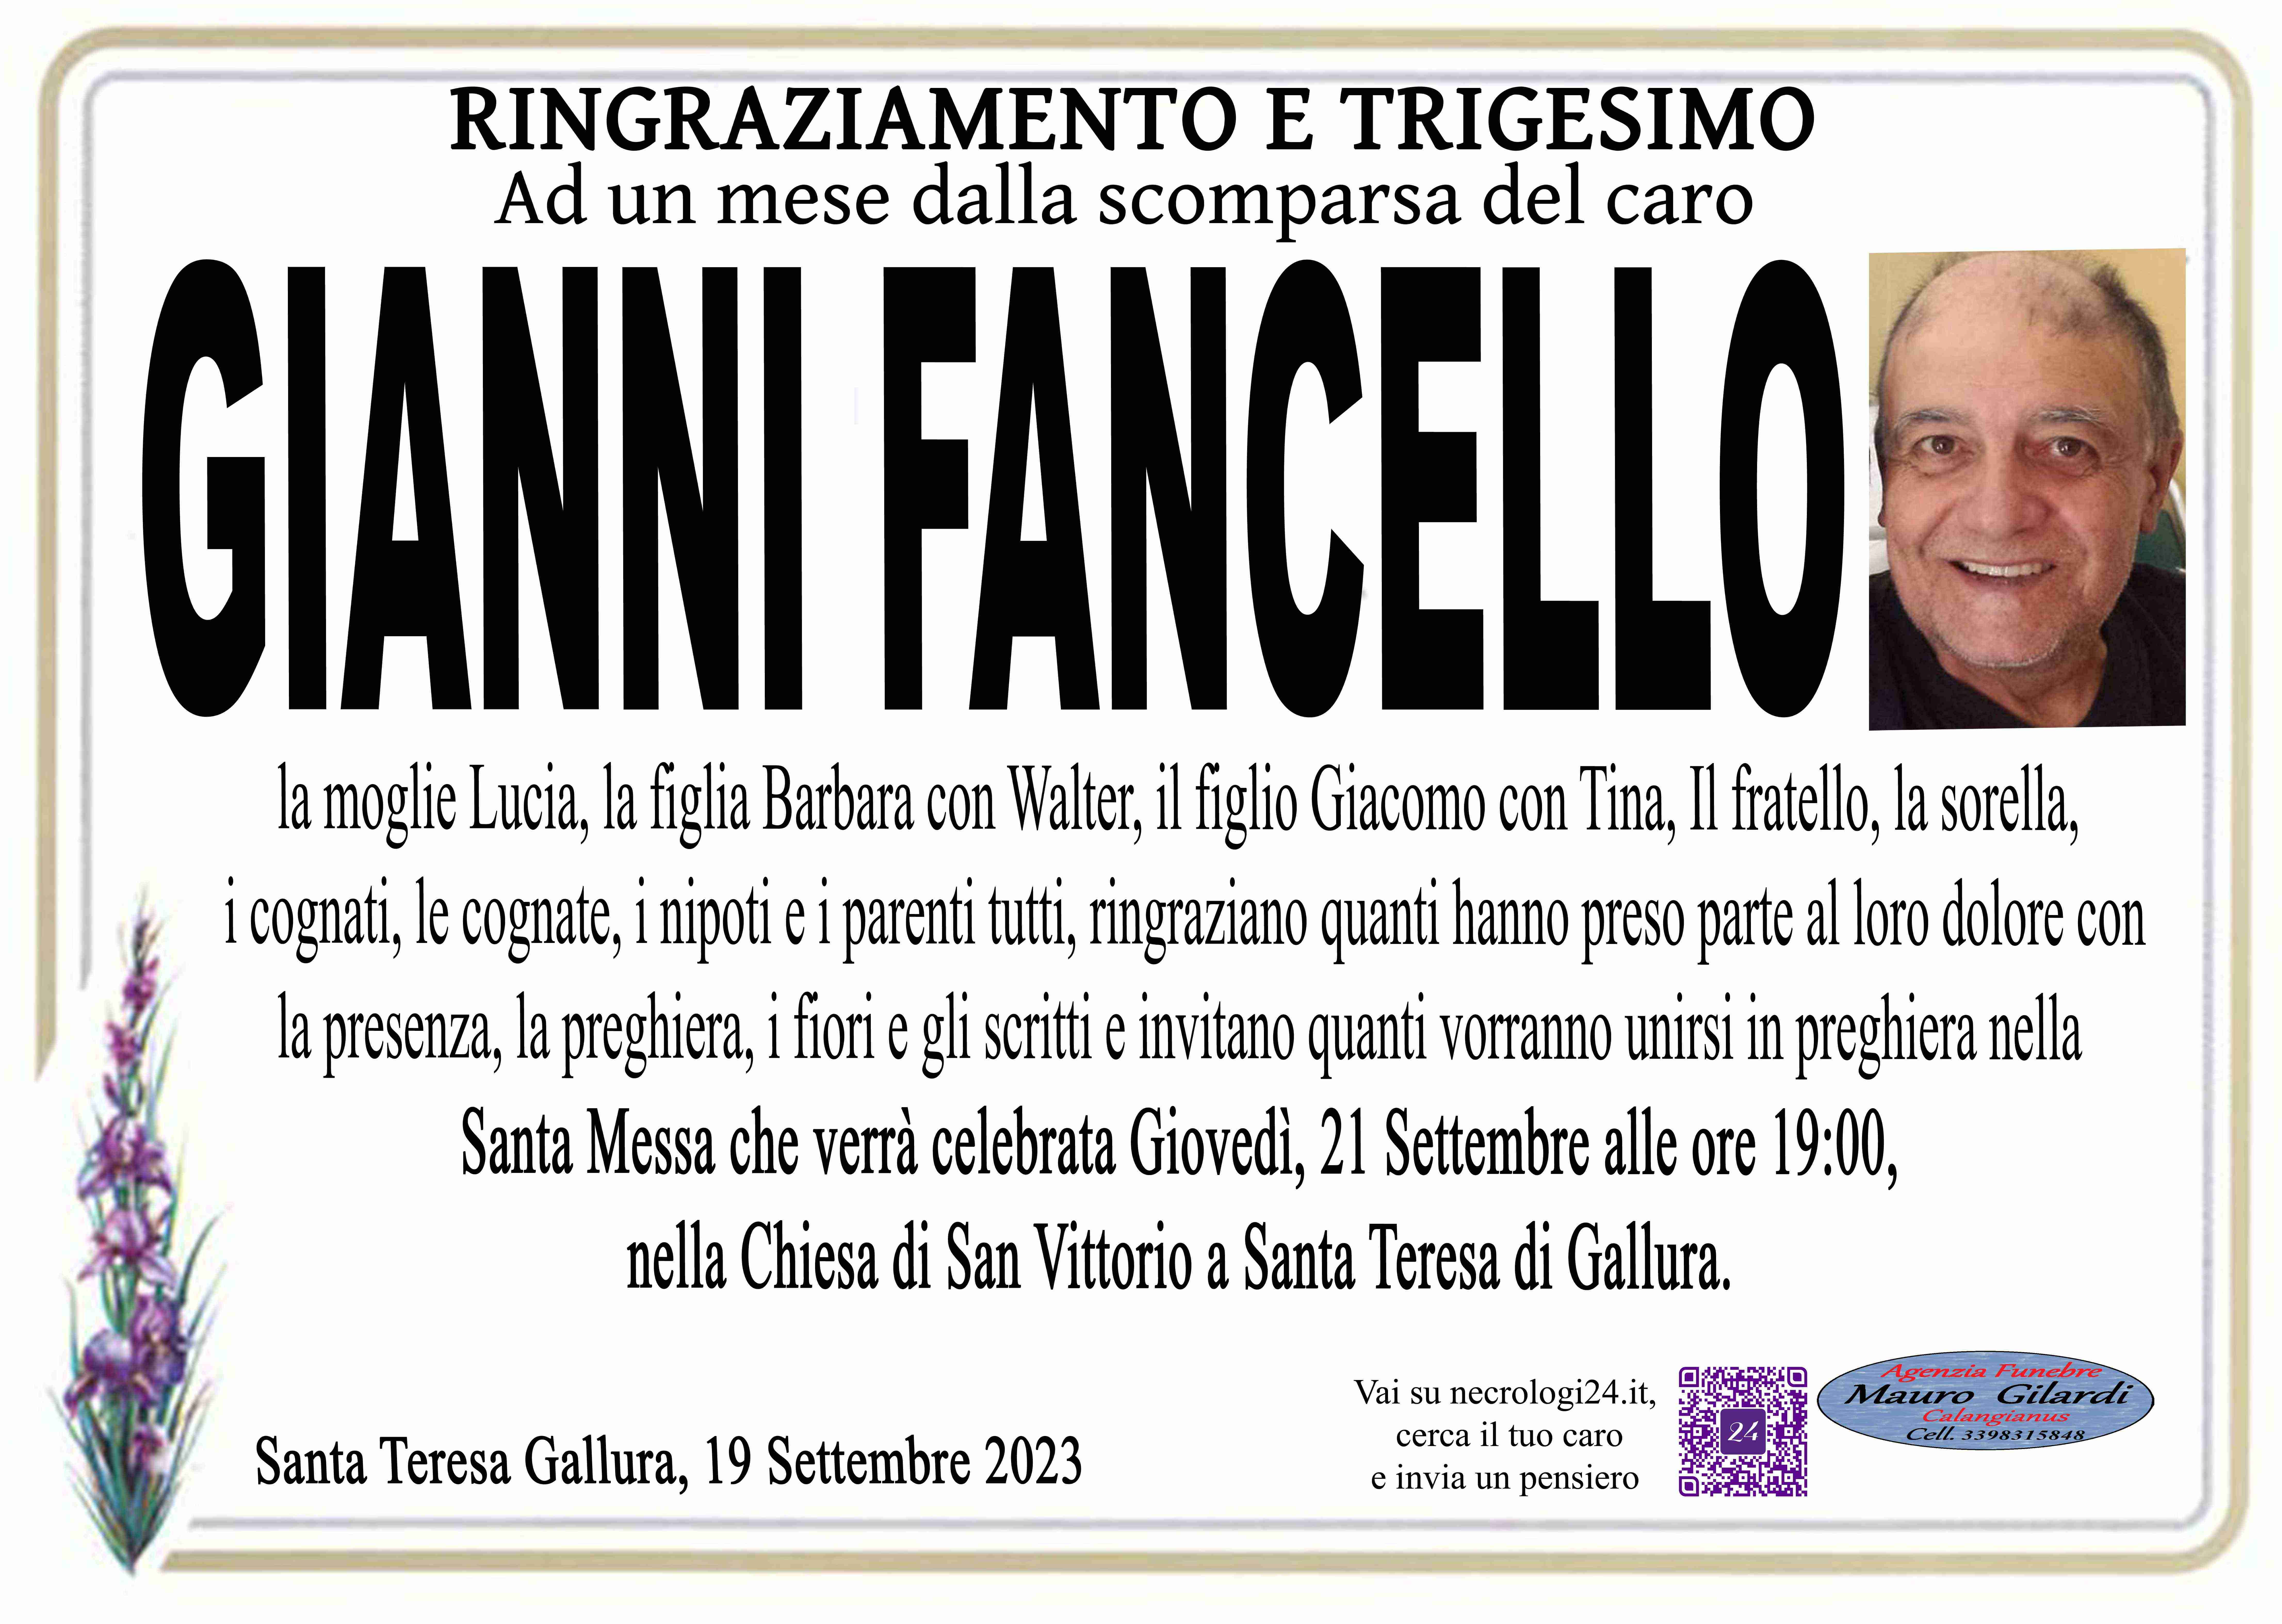 Giovanni Angelo Fancello